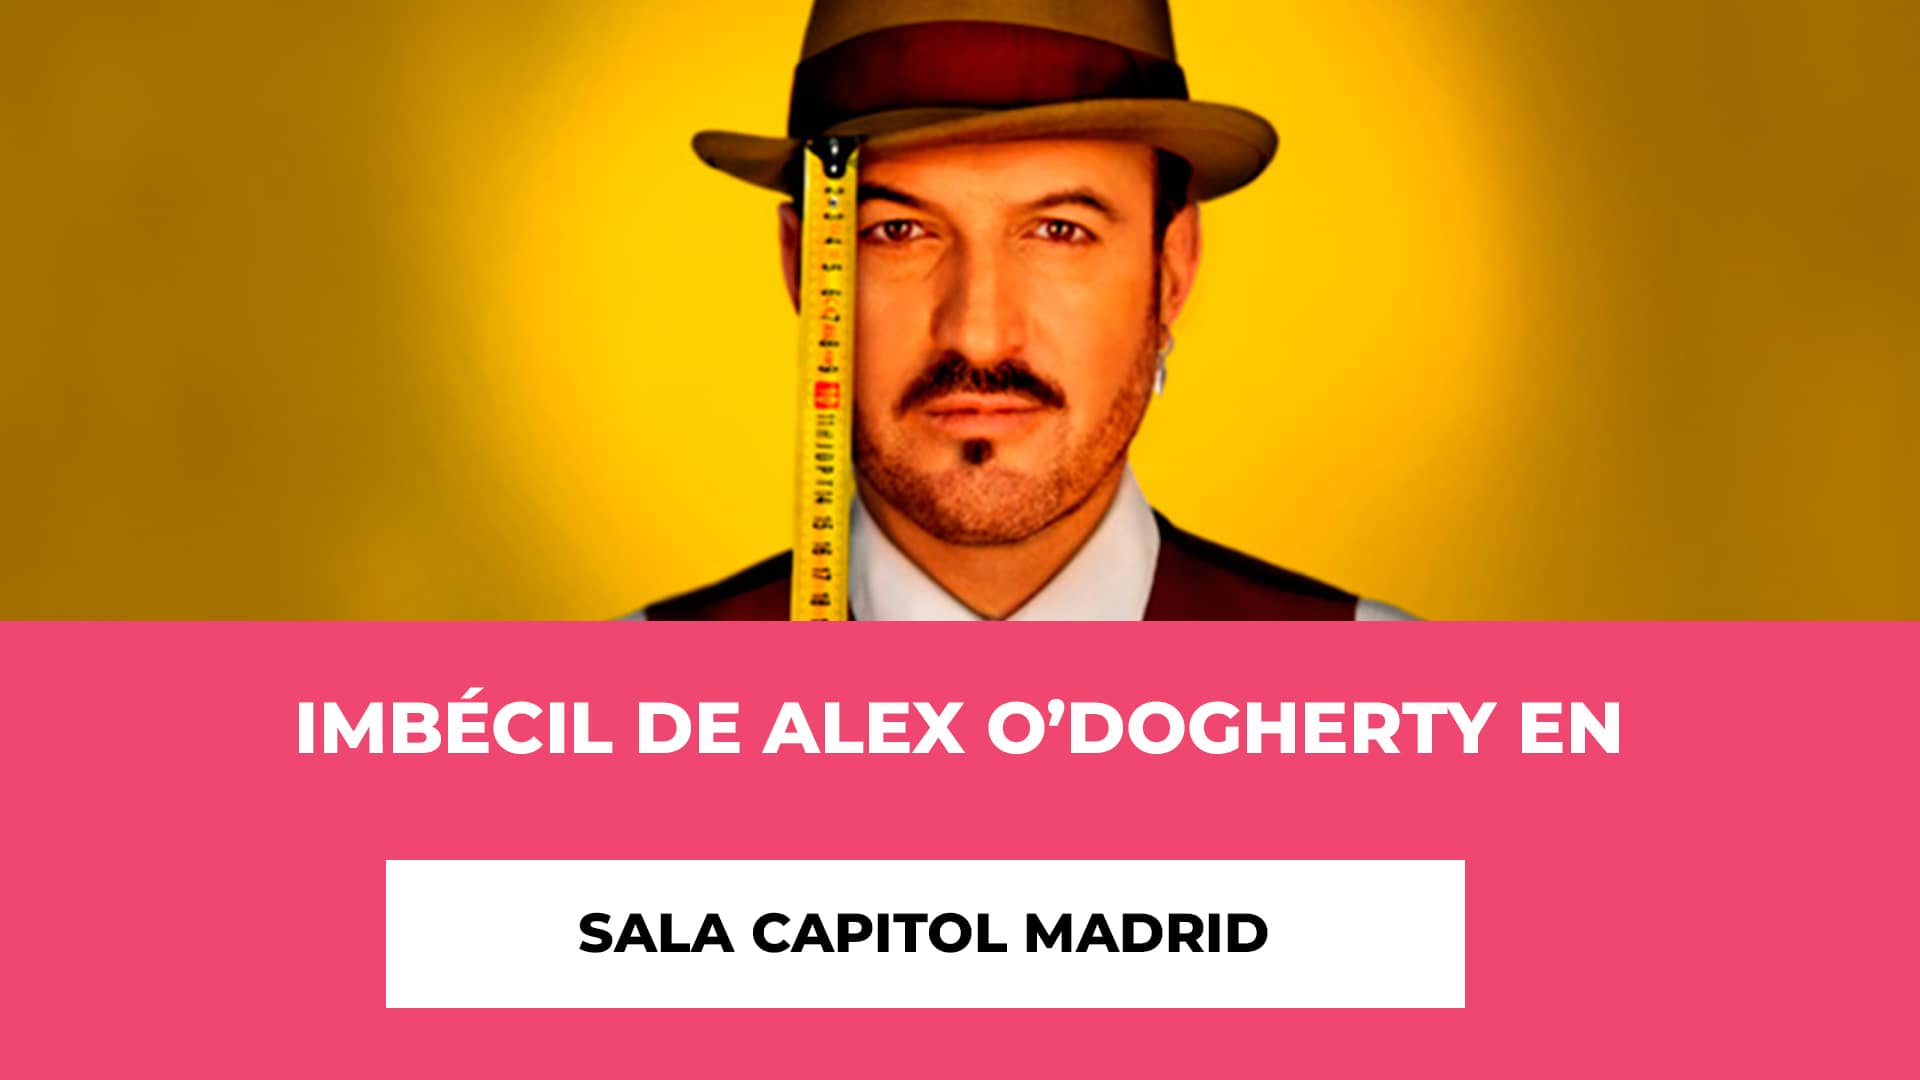 Imbécil de Alex O’Dogherty en Sala Capitol Madrid - Horario - Fechas - Artistas - Contenido del Espectáculo - Precio de las Entradas